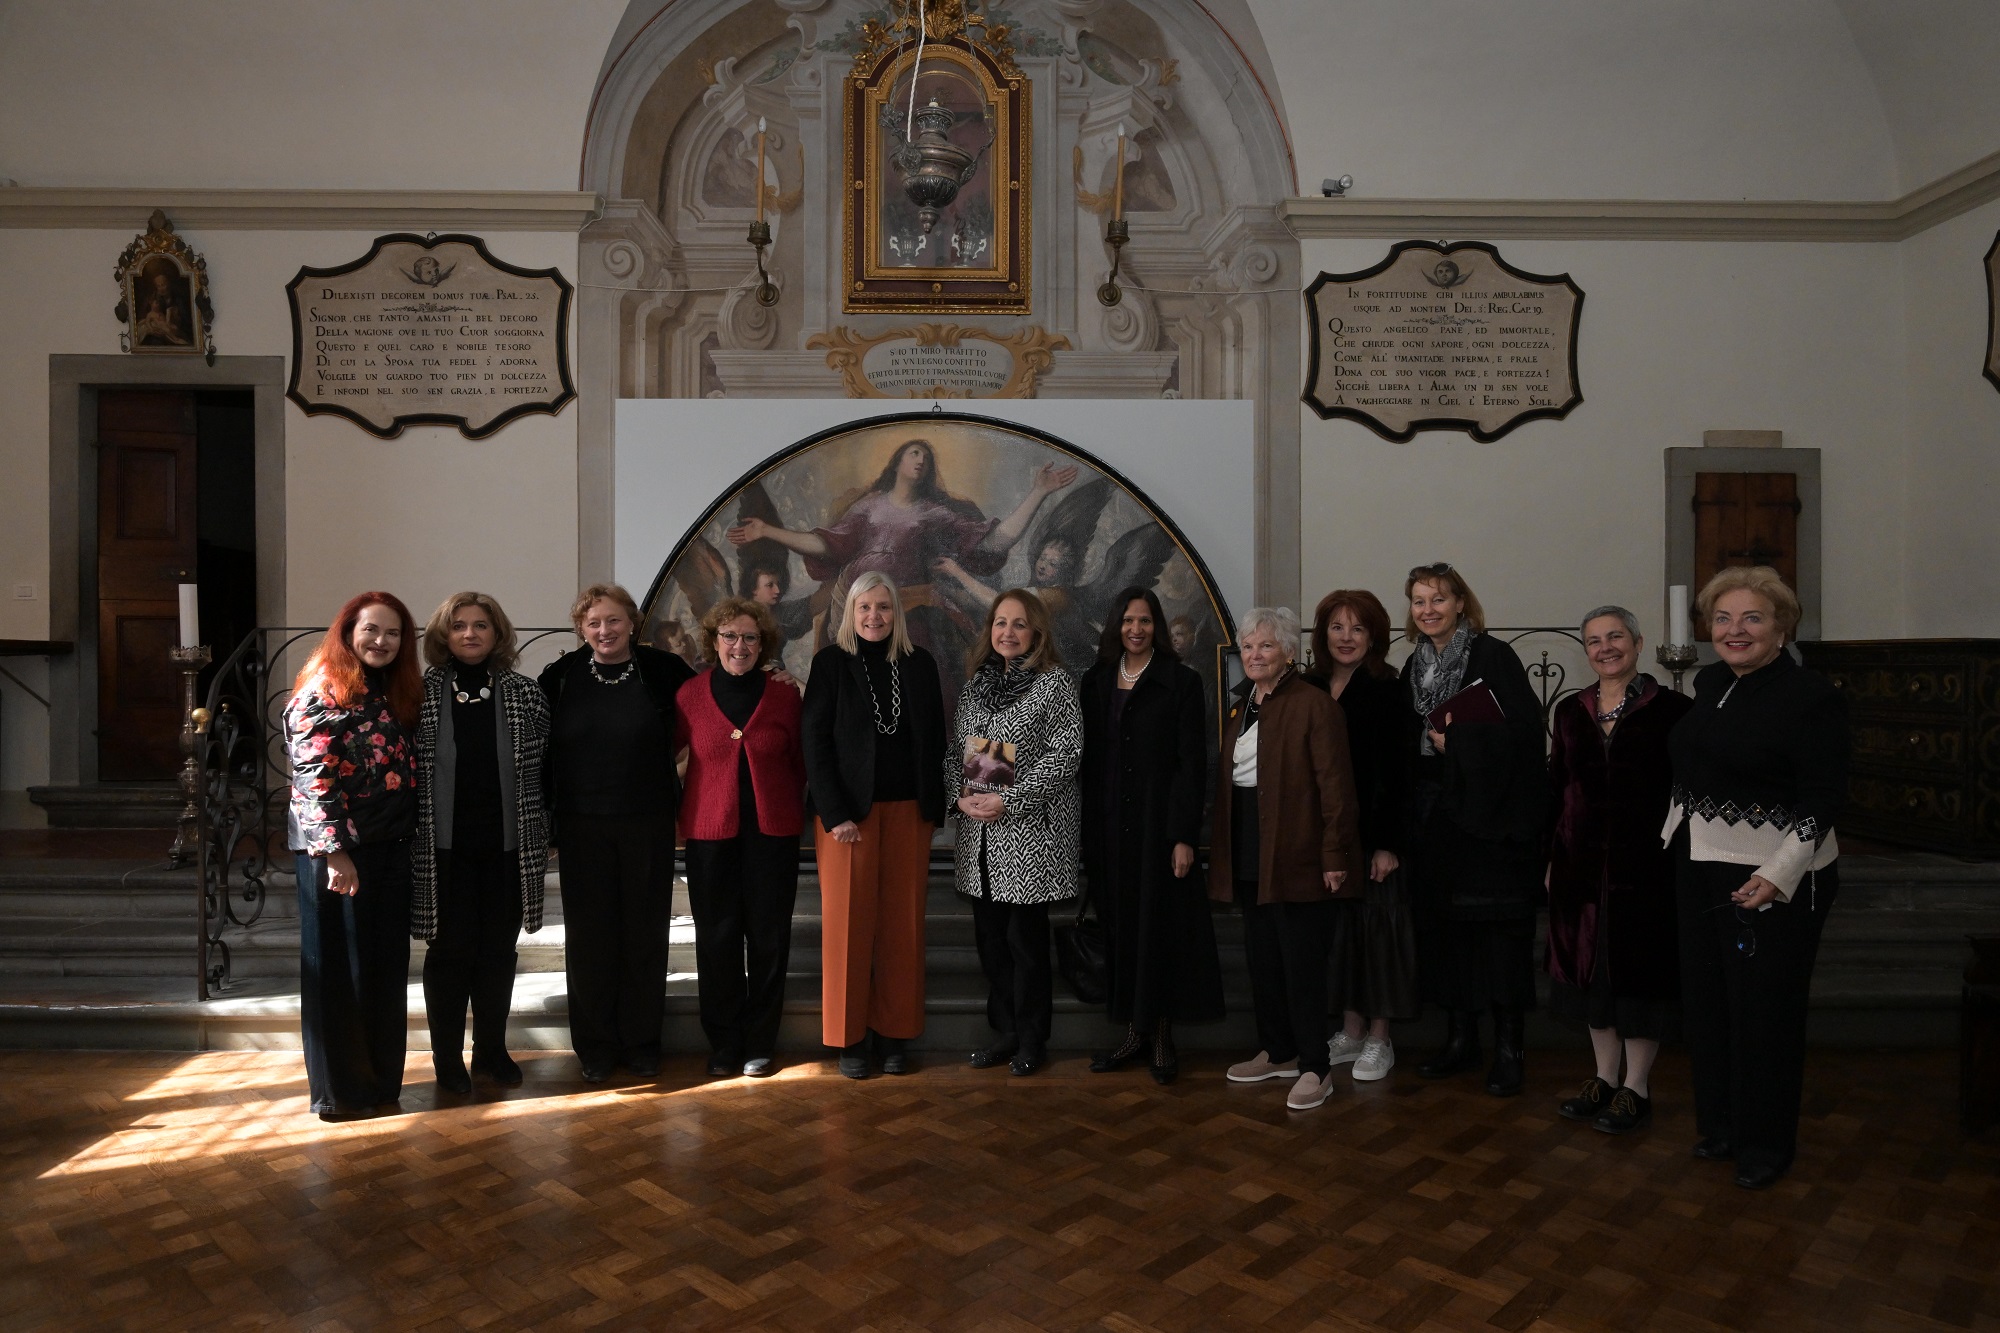 - foto di gruppo davanti al dipinto (la terza da sinistra è Donatella Pegazzano, poi - proseguendo verso destra - Rossella Lari, Alessandra Petrucci, Suzanne Frank, Ragini Gupta)